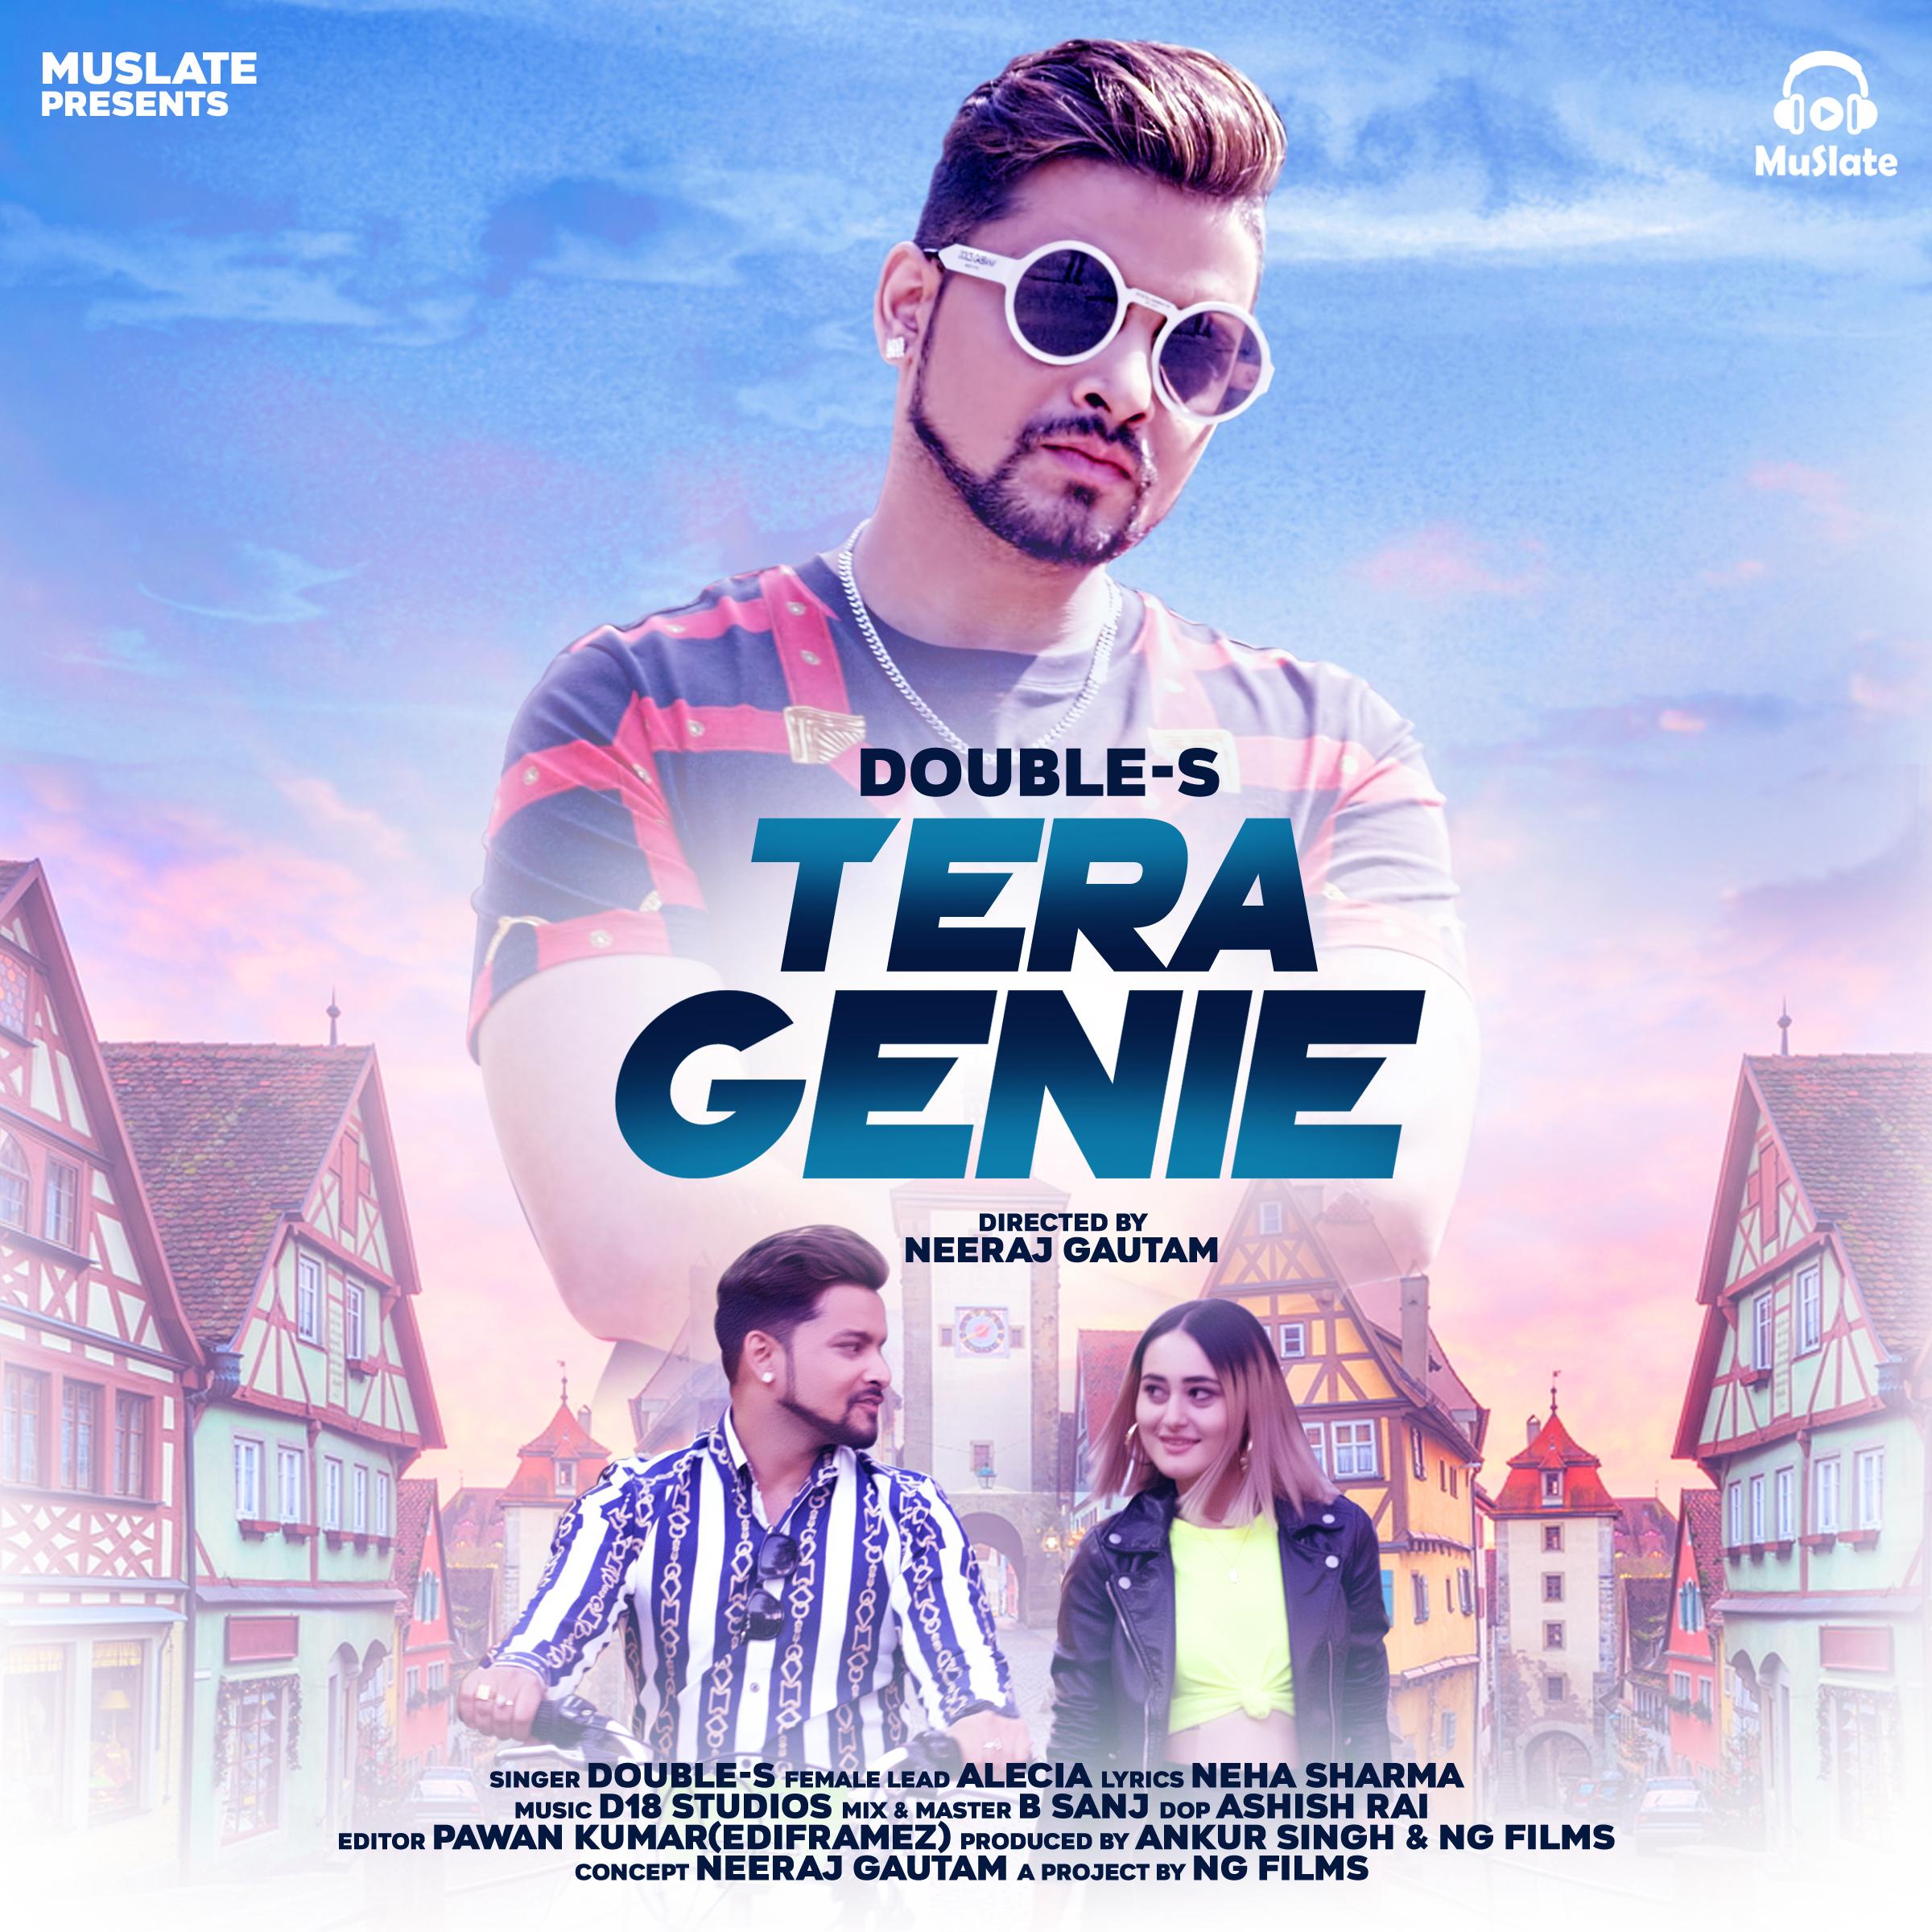 Tera Genie by Double-S